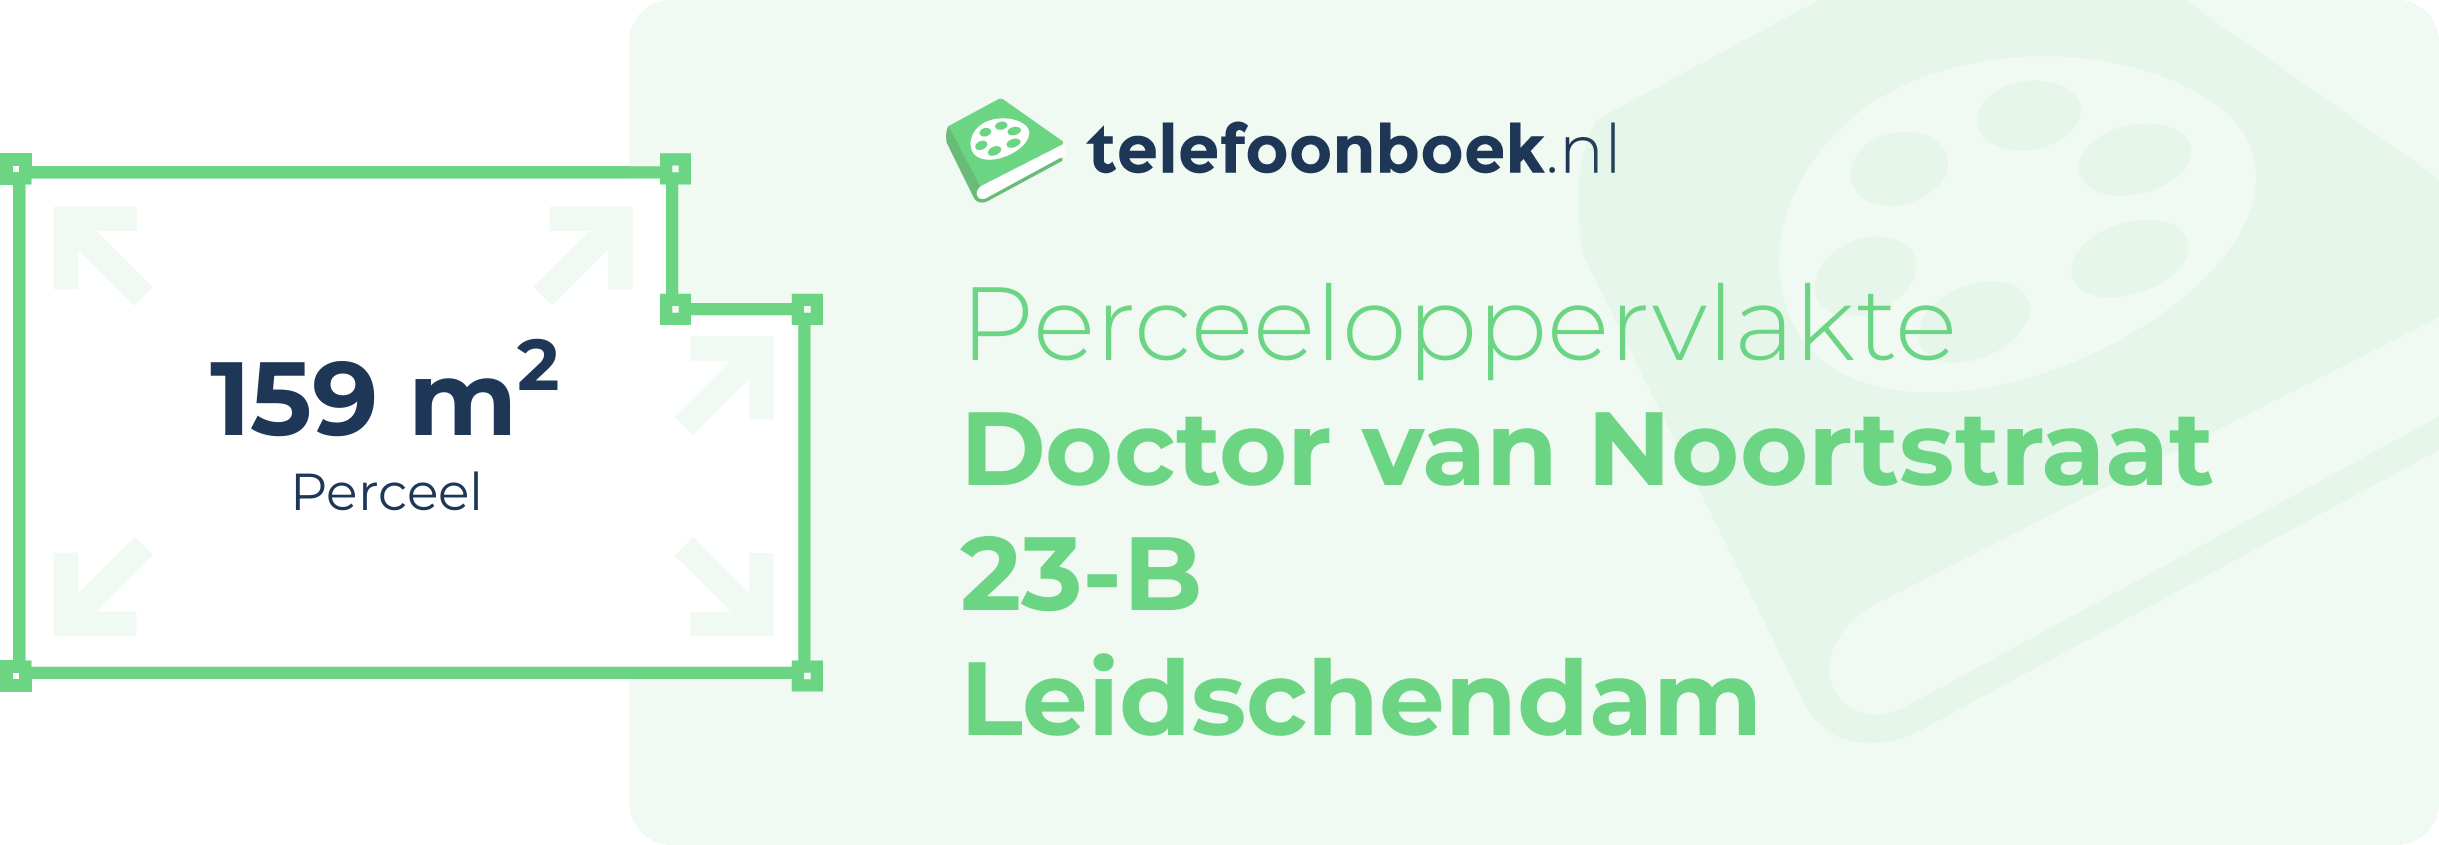 Perceeloppervlakte Doctor Van Noortstraat 23-B Leidschendam